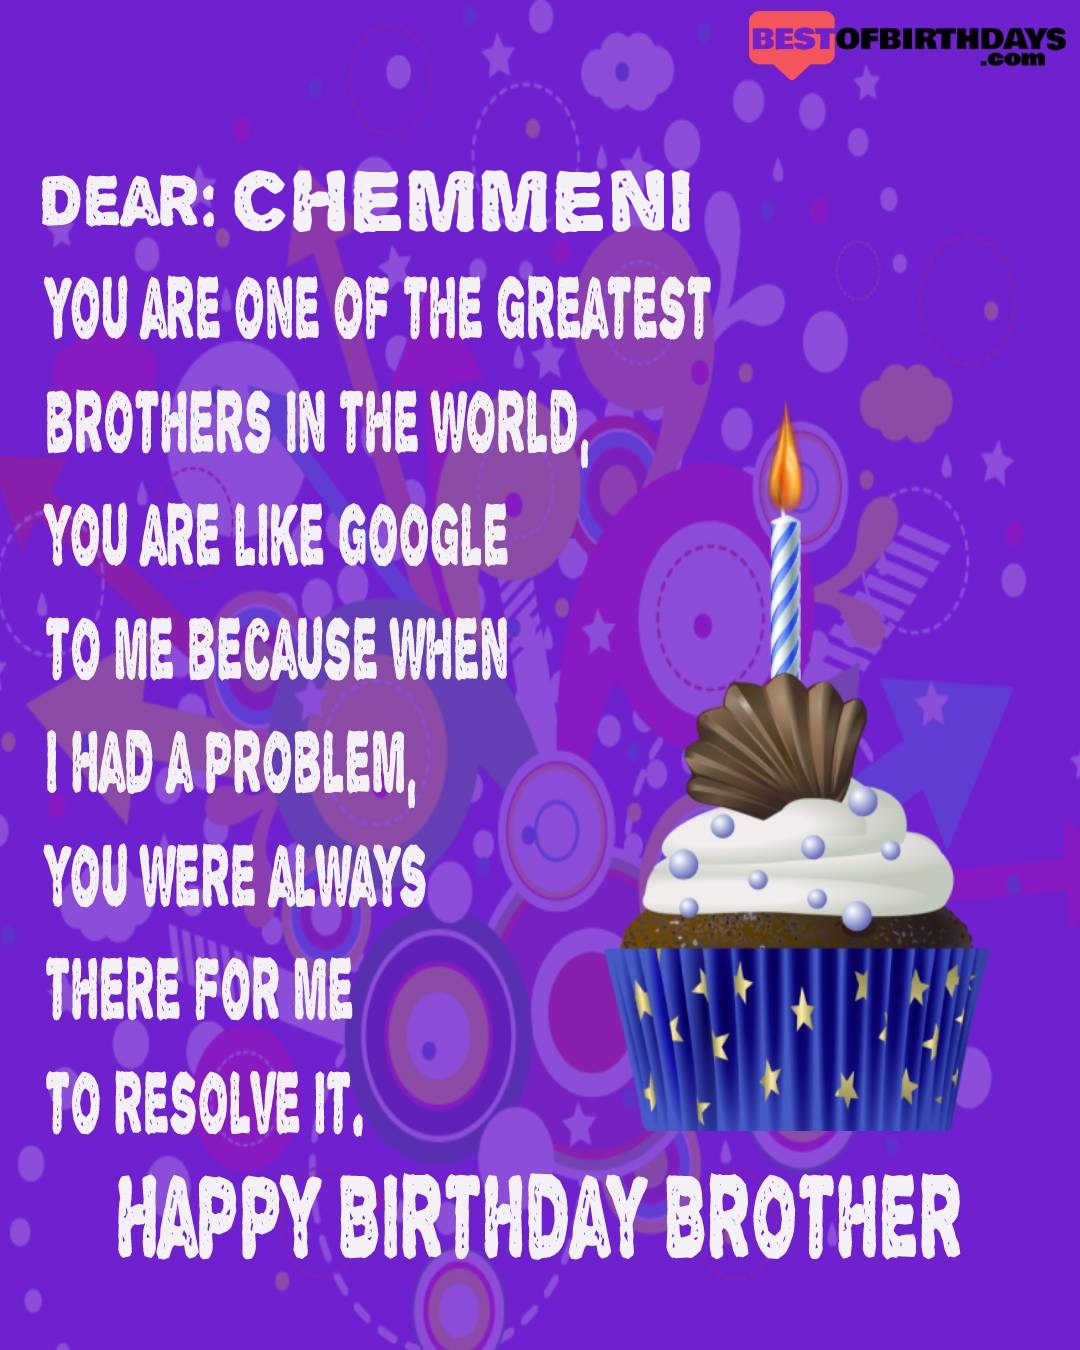 Happy birthday chemmeni bhai brother bro